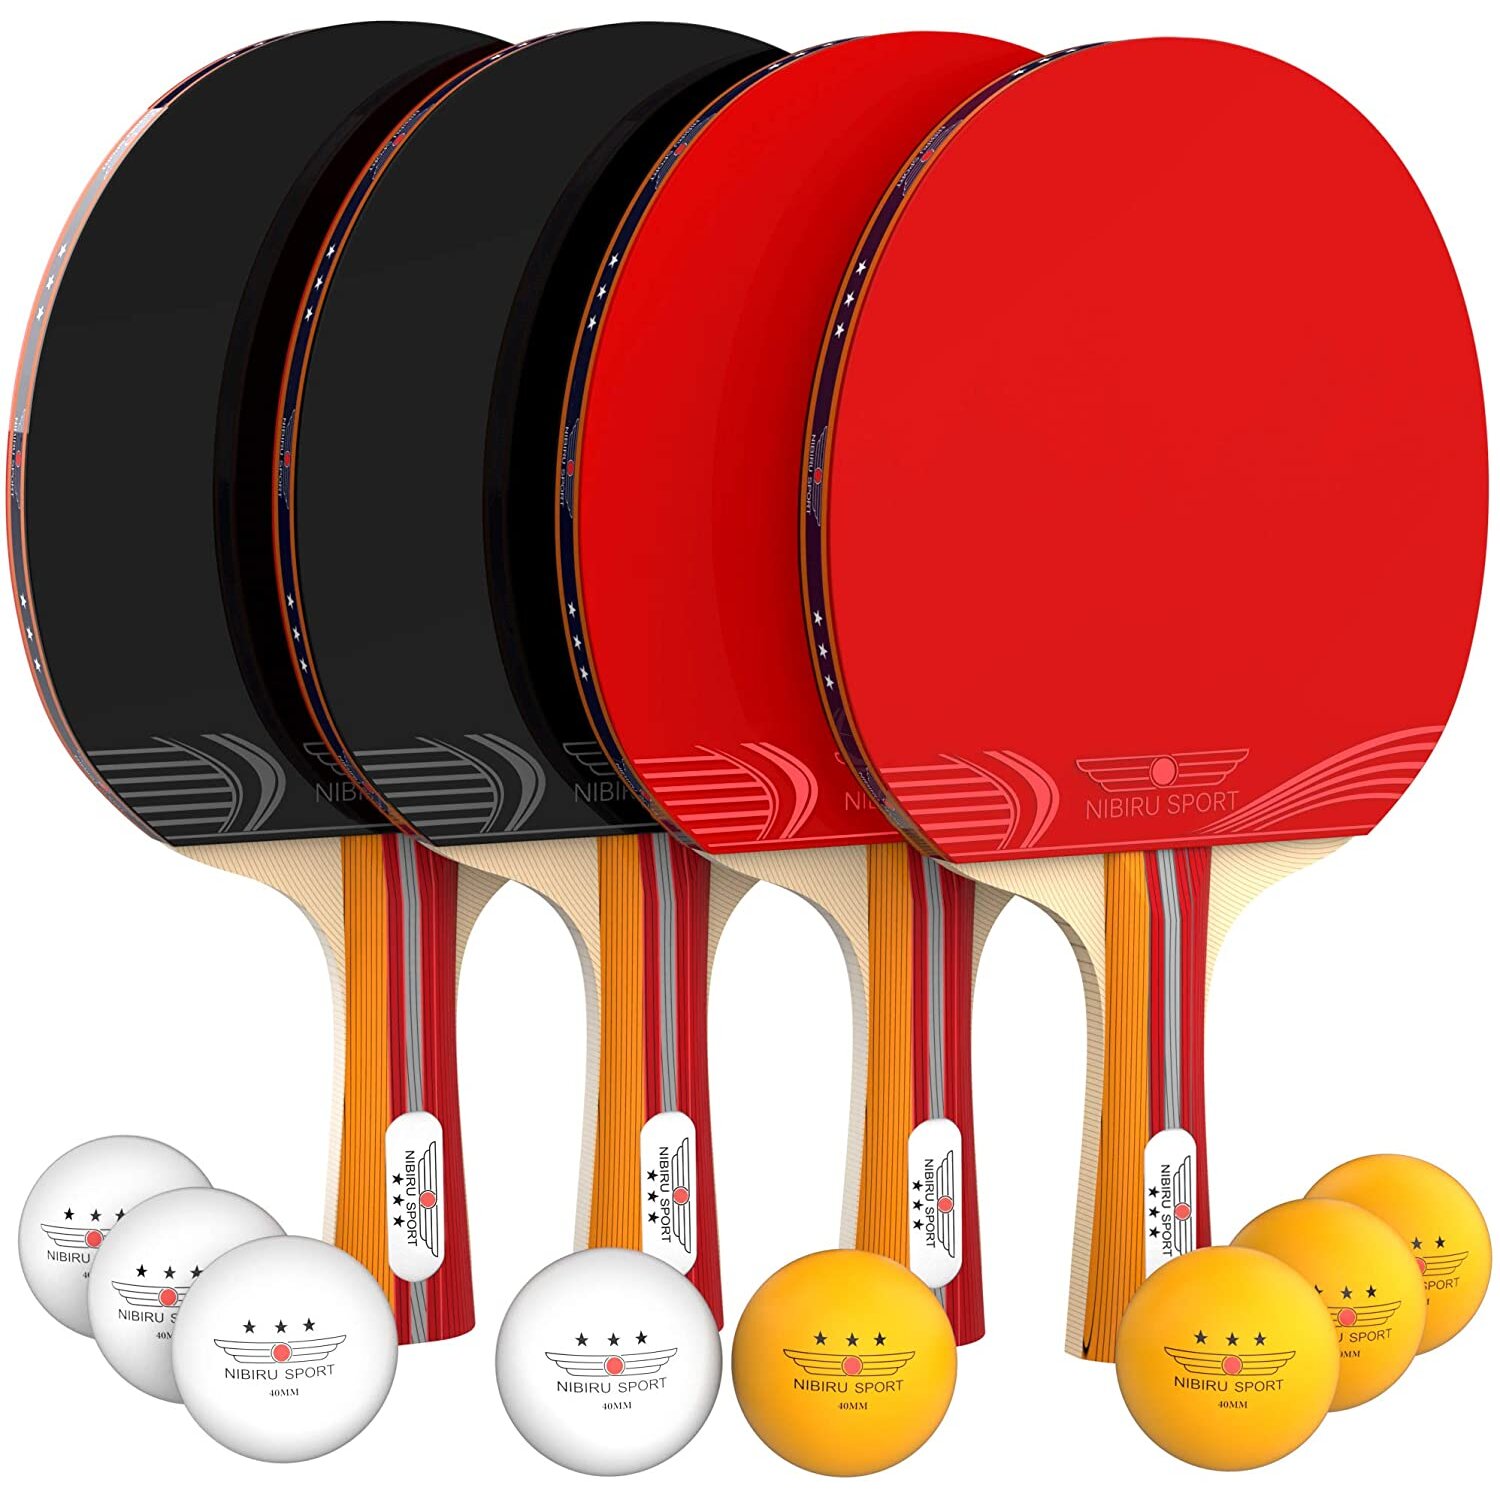 NIBIRU SPORT Ping Pong Paddle Set (4-Player Bundle)